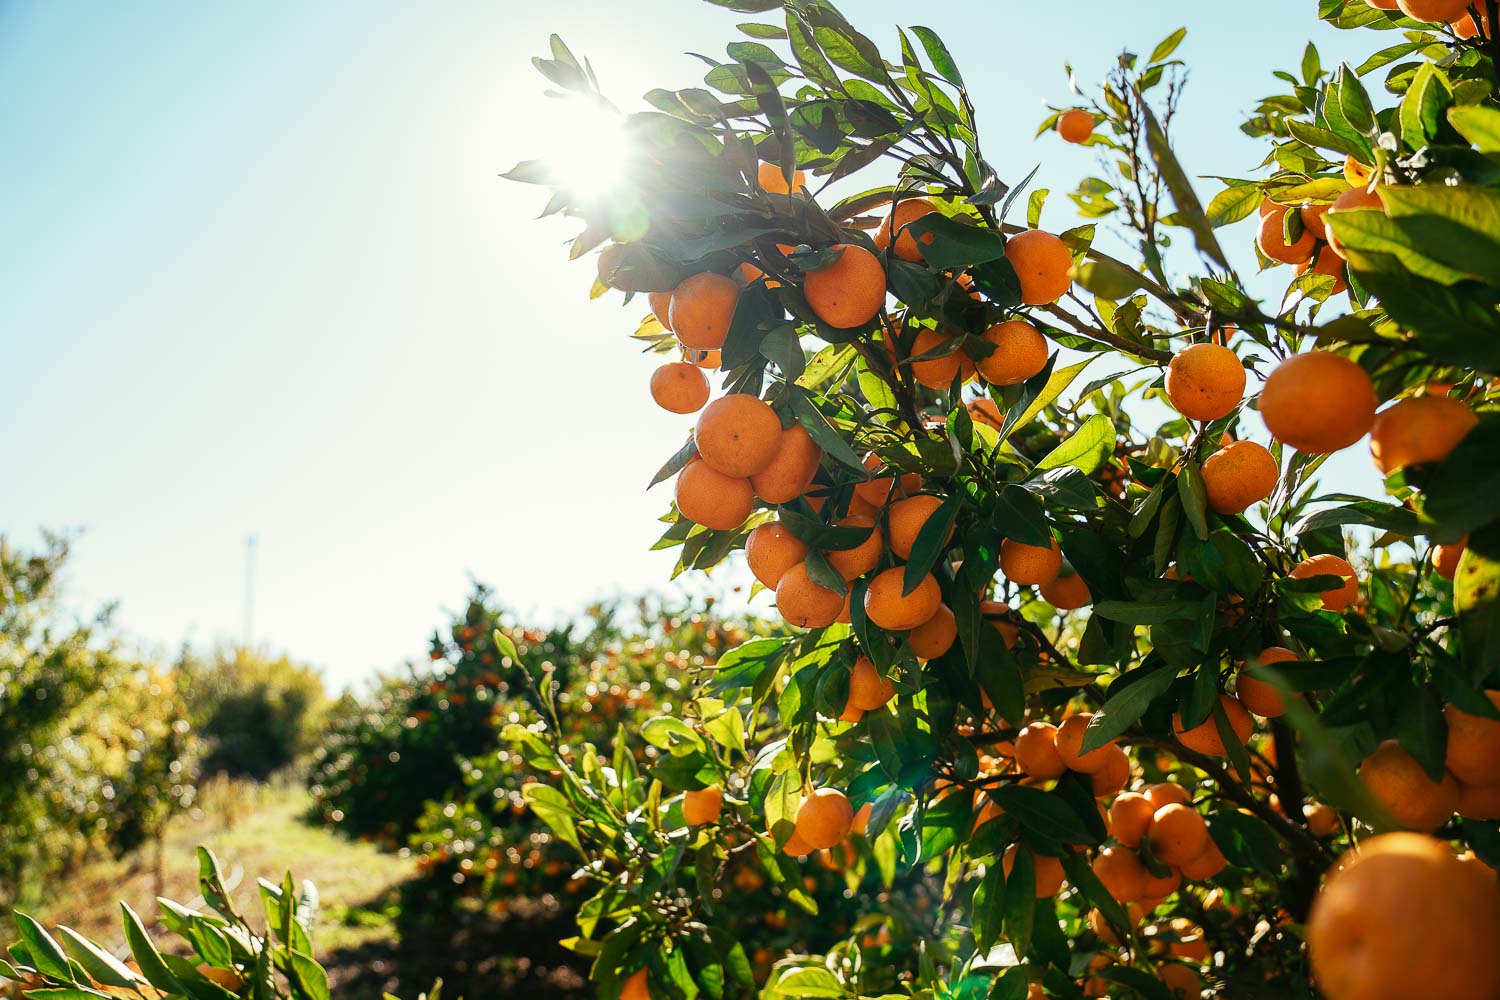 Zoganj - drevno istorijsko mjesto sada krase plantaže mandarina